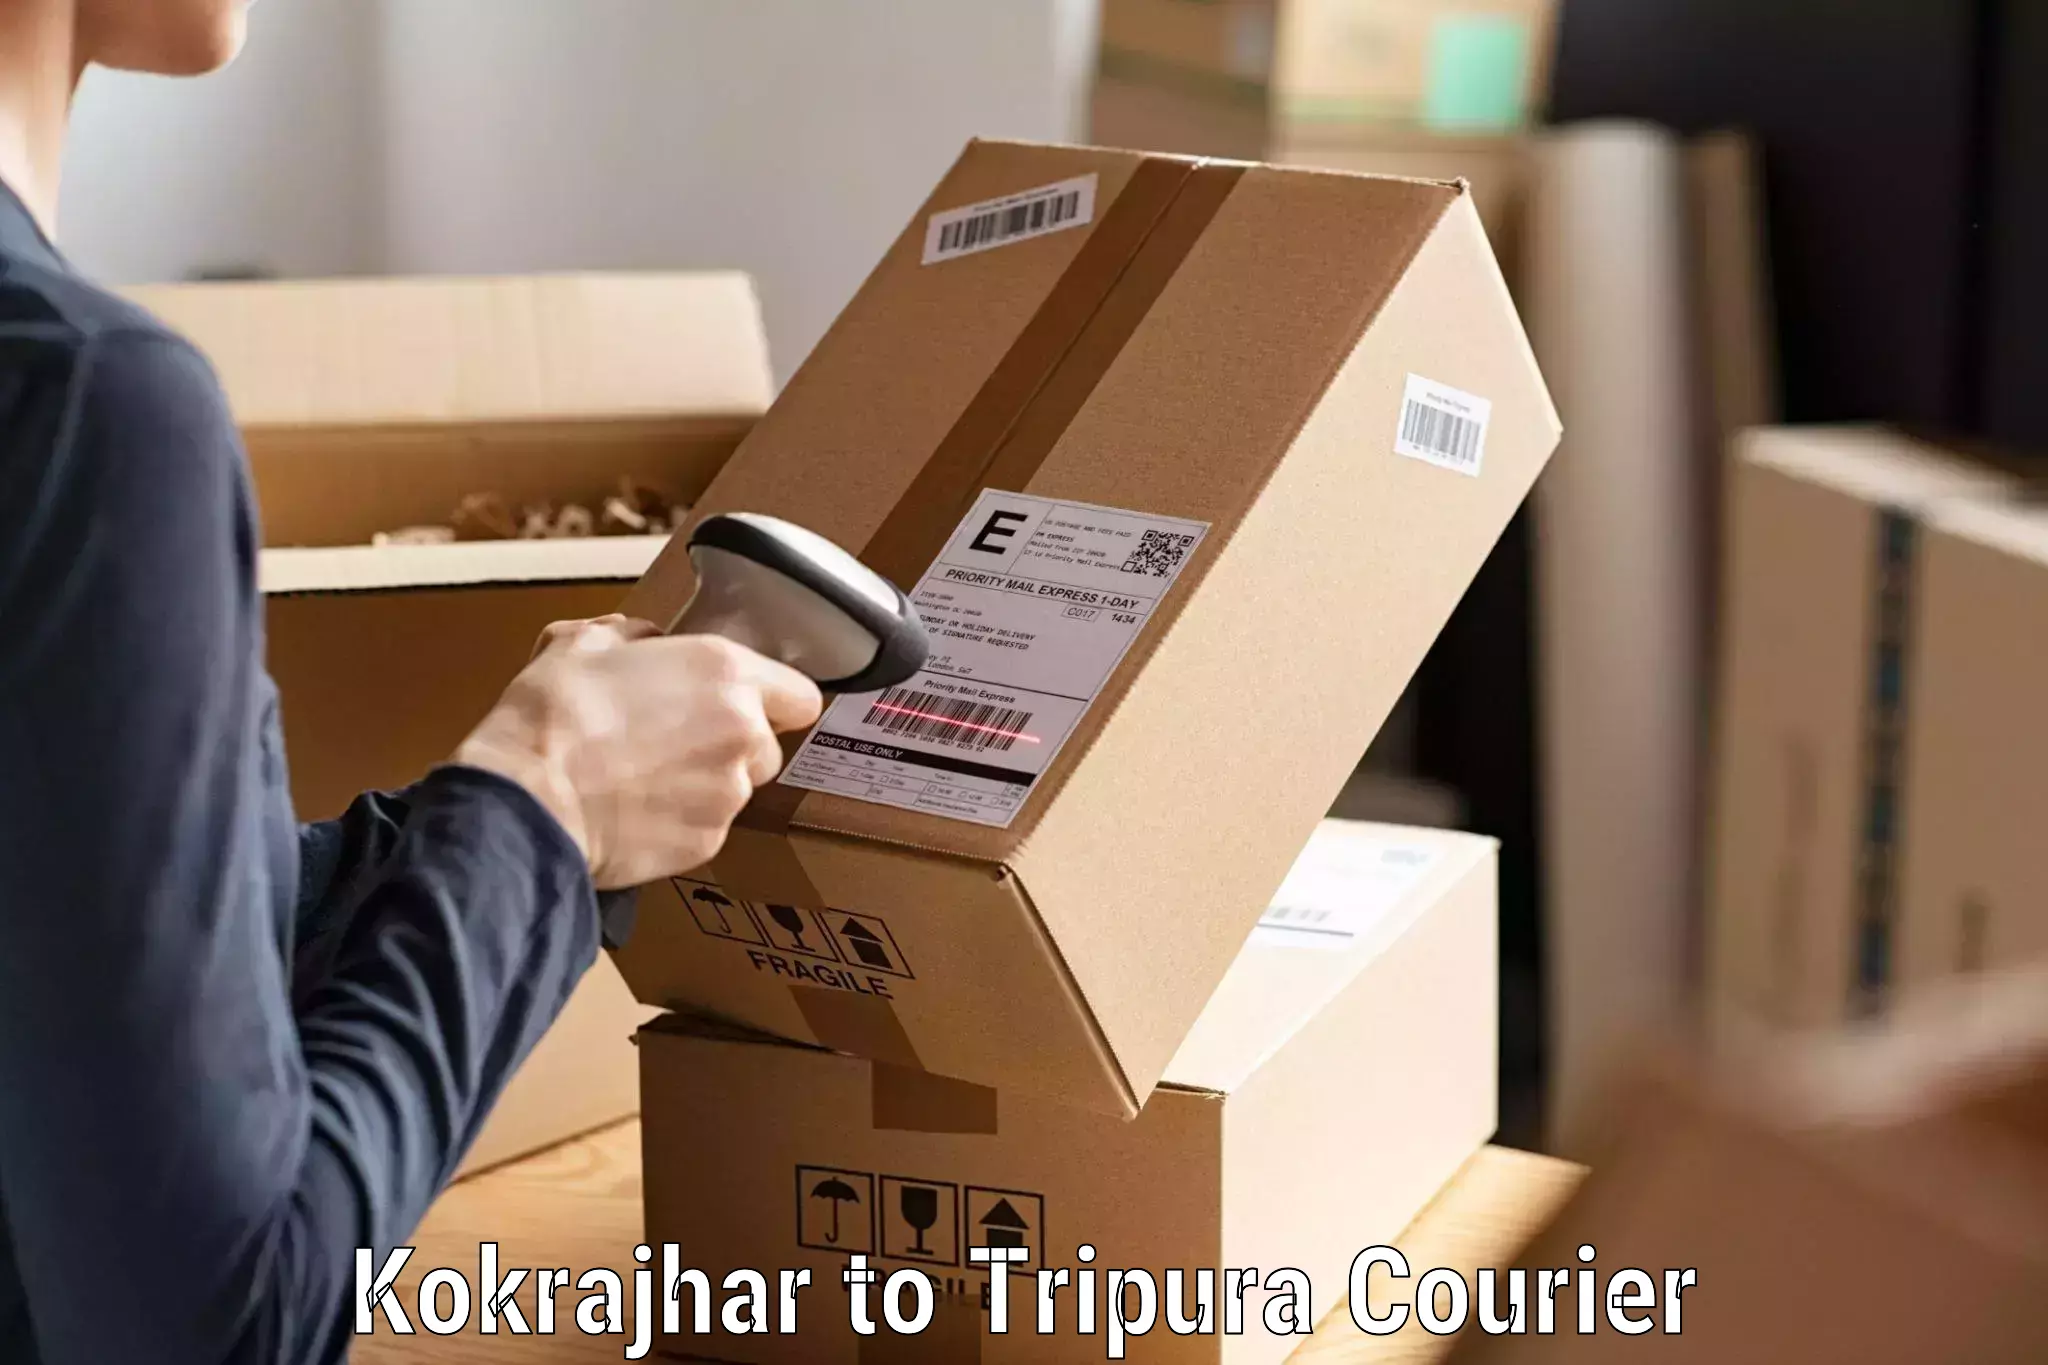 Nationwide parcel services Kokrajhar to Agartala